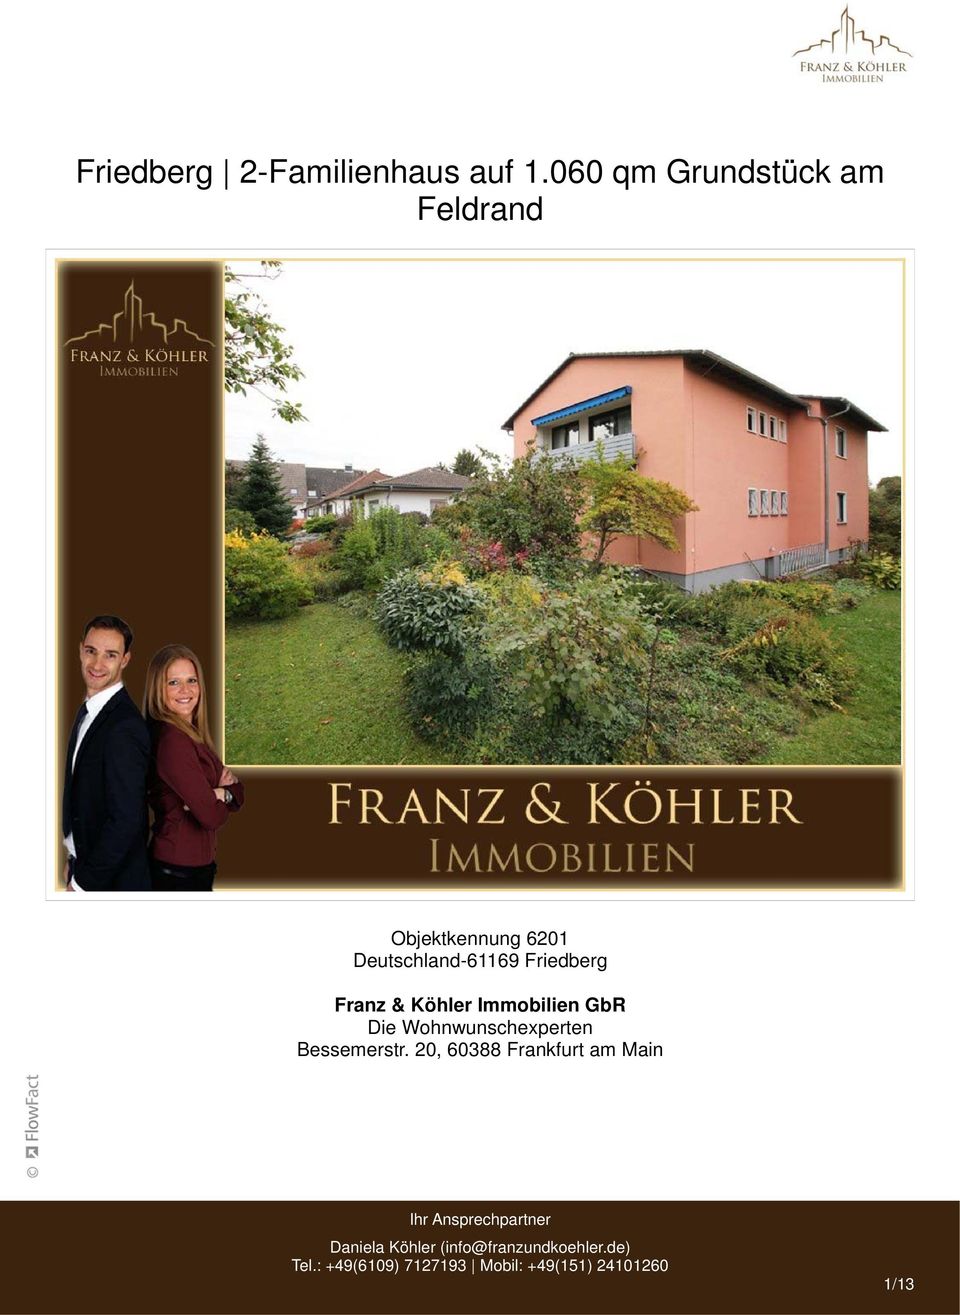 6201 Franz & Köhler Immobilien GbR Die